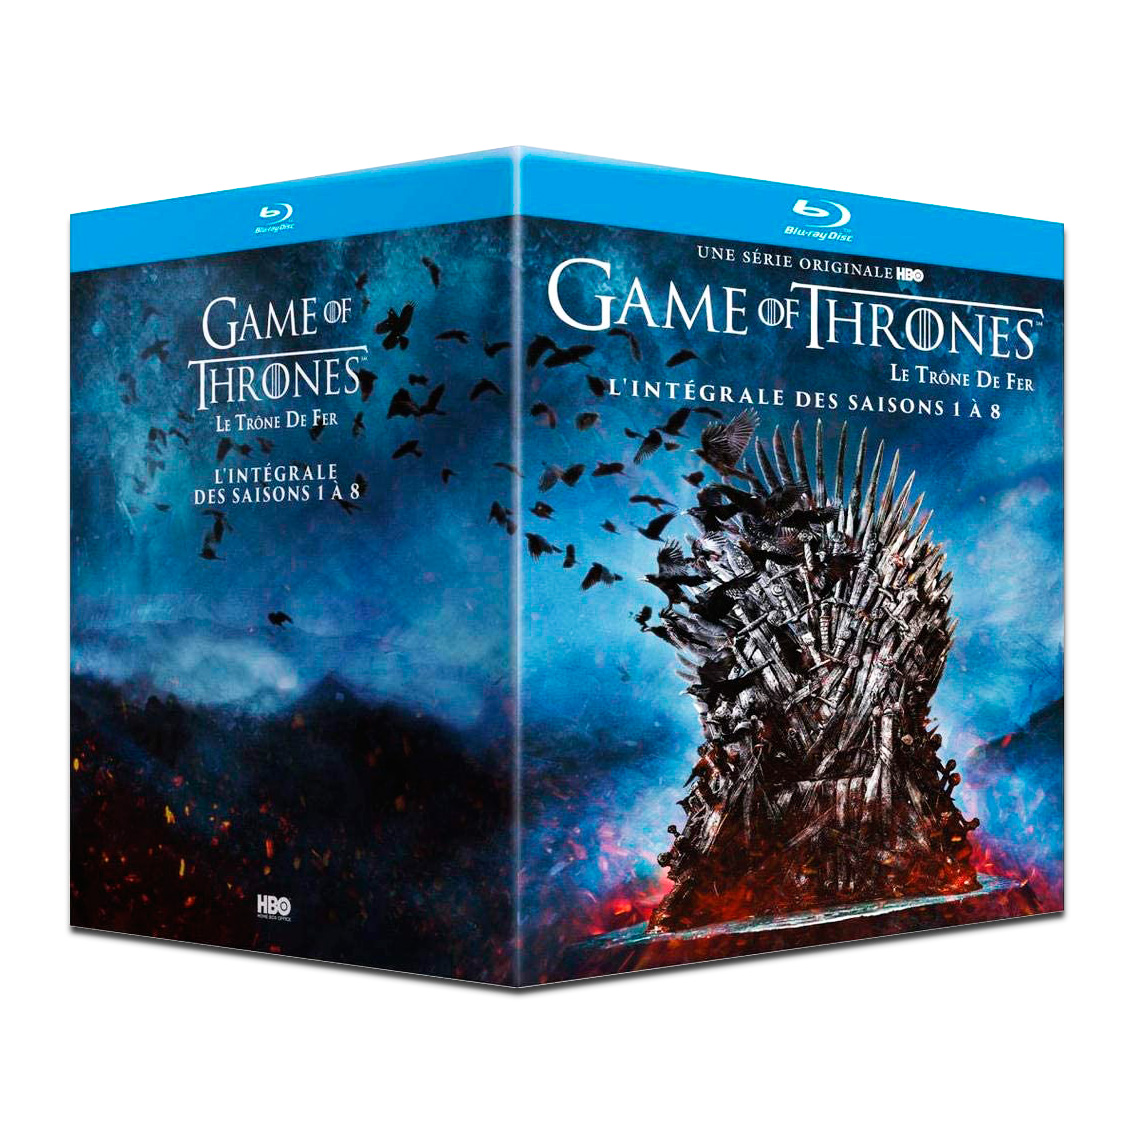 Coffret de la série originale Game of Thrones (Le Trône de Fer) comprenant l'intégrale des Saisons 1 à 8